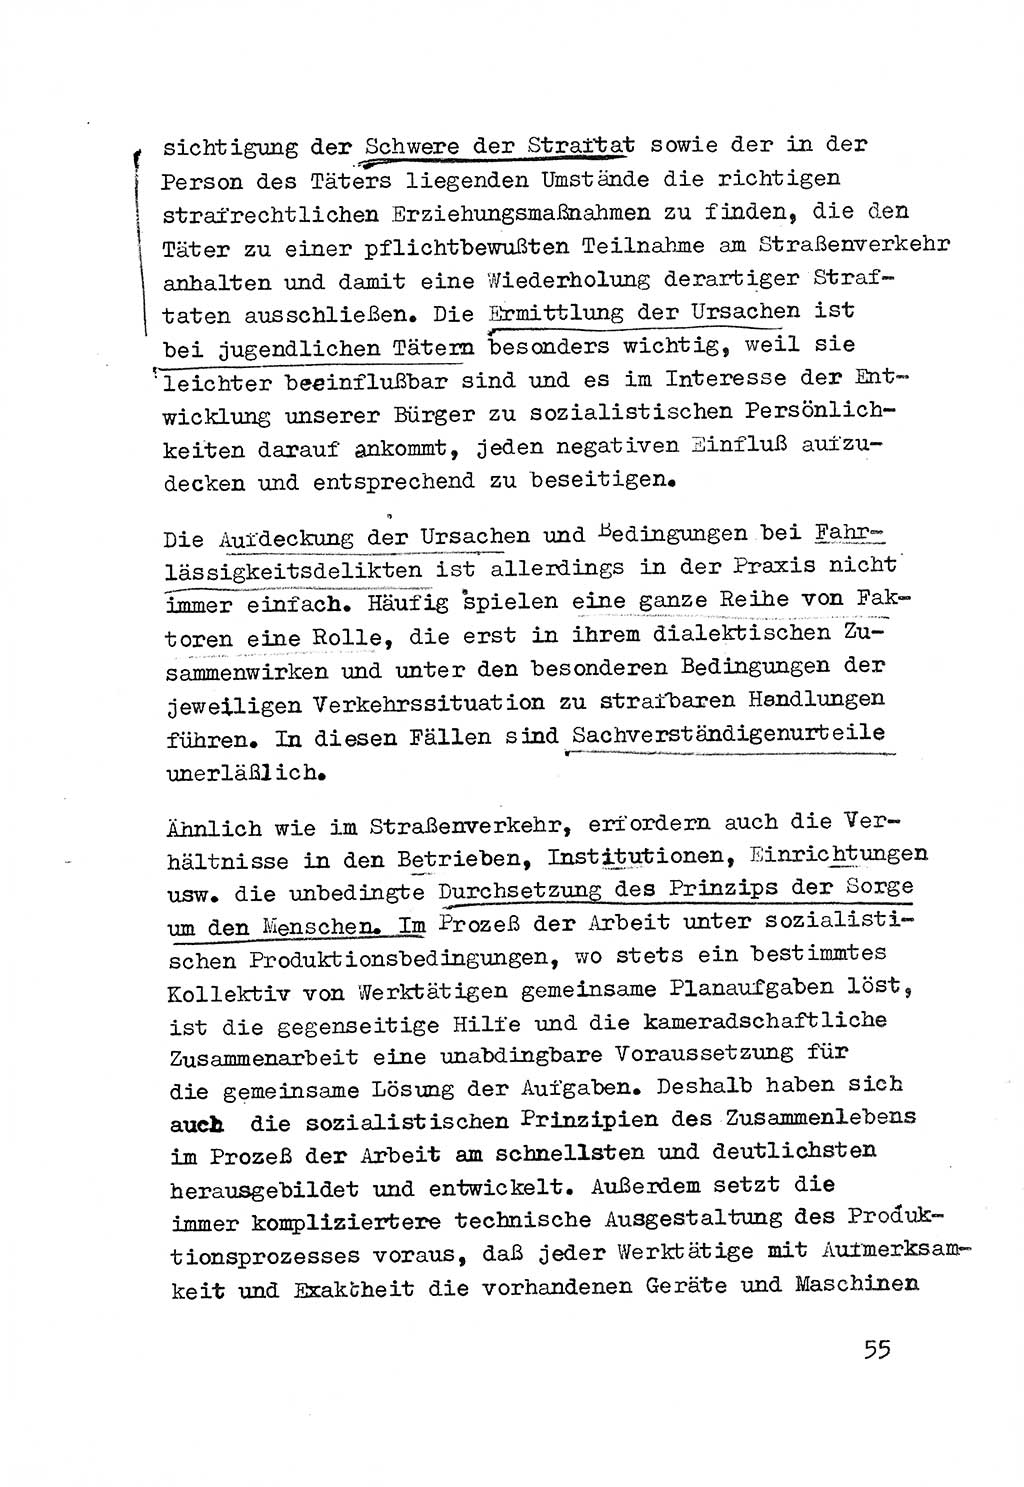 Strafrecht der DDR (Deutsche Demokratische Republik), Besonderer Teil, Lehrmaterial, Heft 3 1969, Seite 55 (Strafr. DDR BT Lehrmat. H. 3 1969, S. 55)